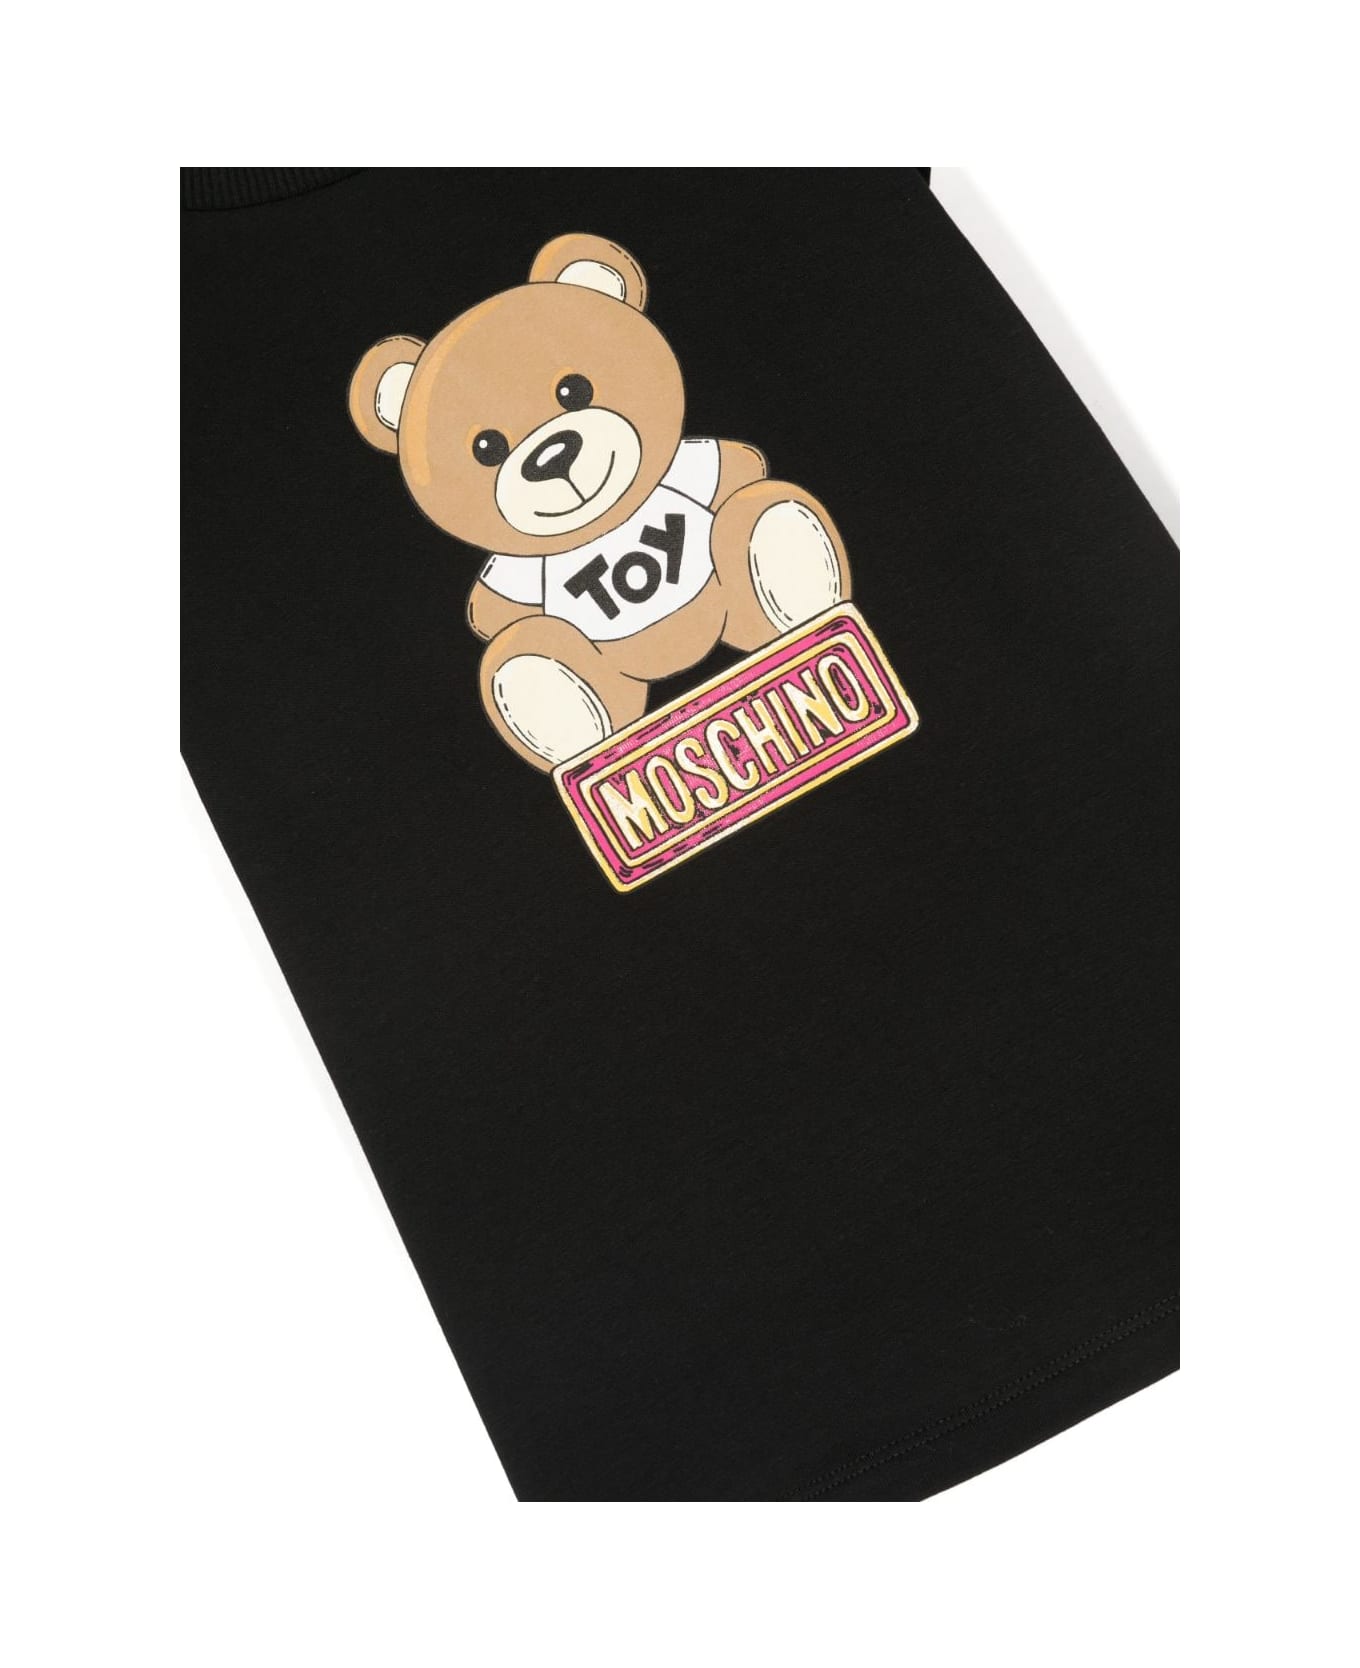 Moschino T-shirt Teddy Bear Bianca In Jersey Di Cotone Bambino - Bianco